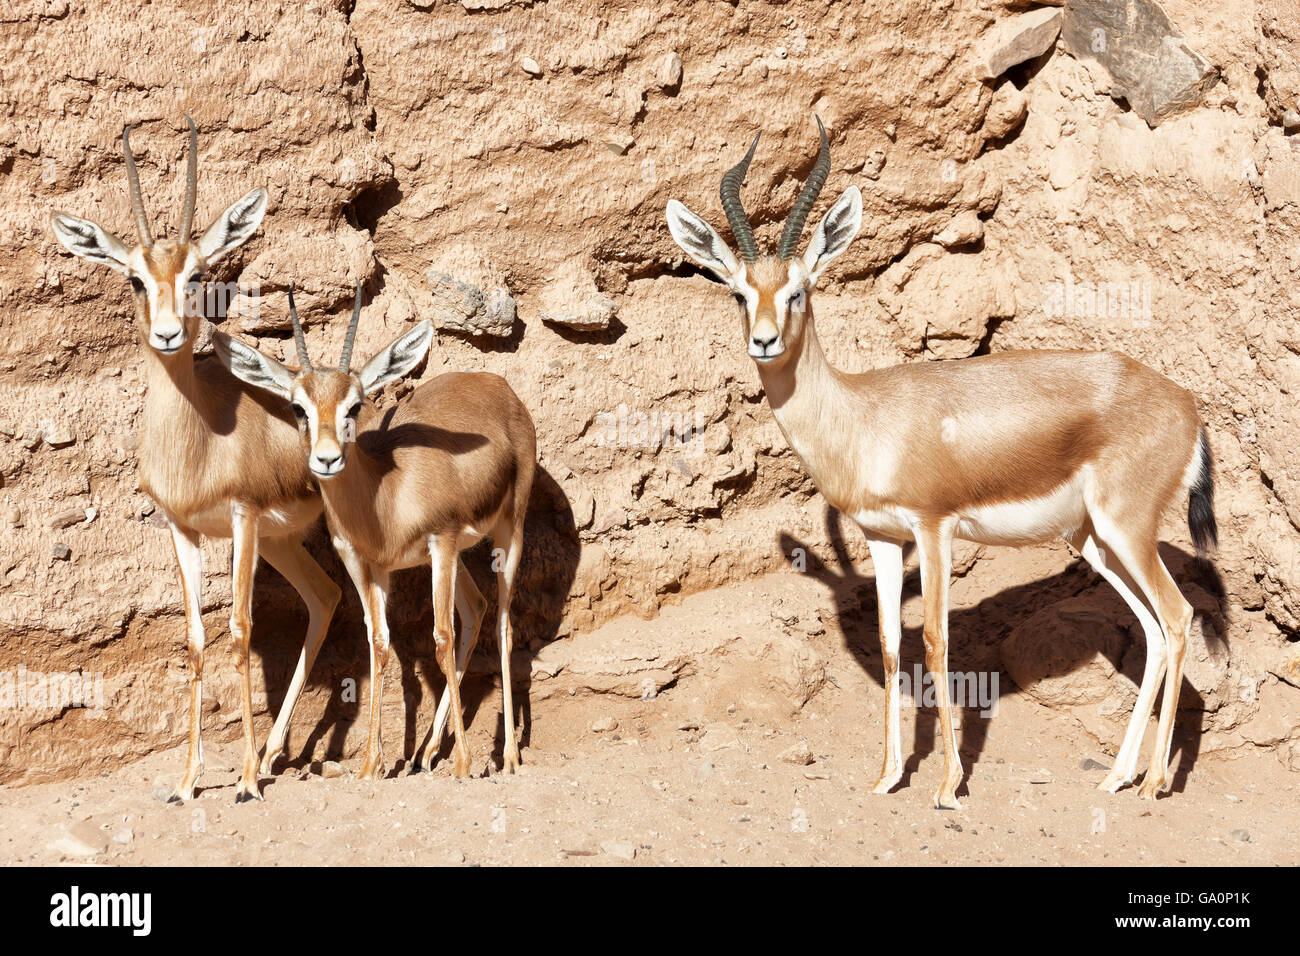 Gazelles in the Sahara desert. Stock Photo